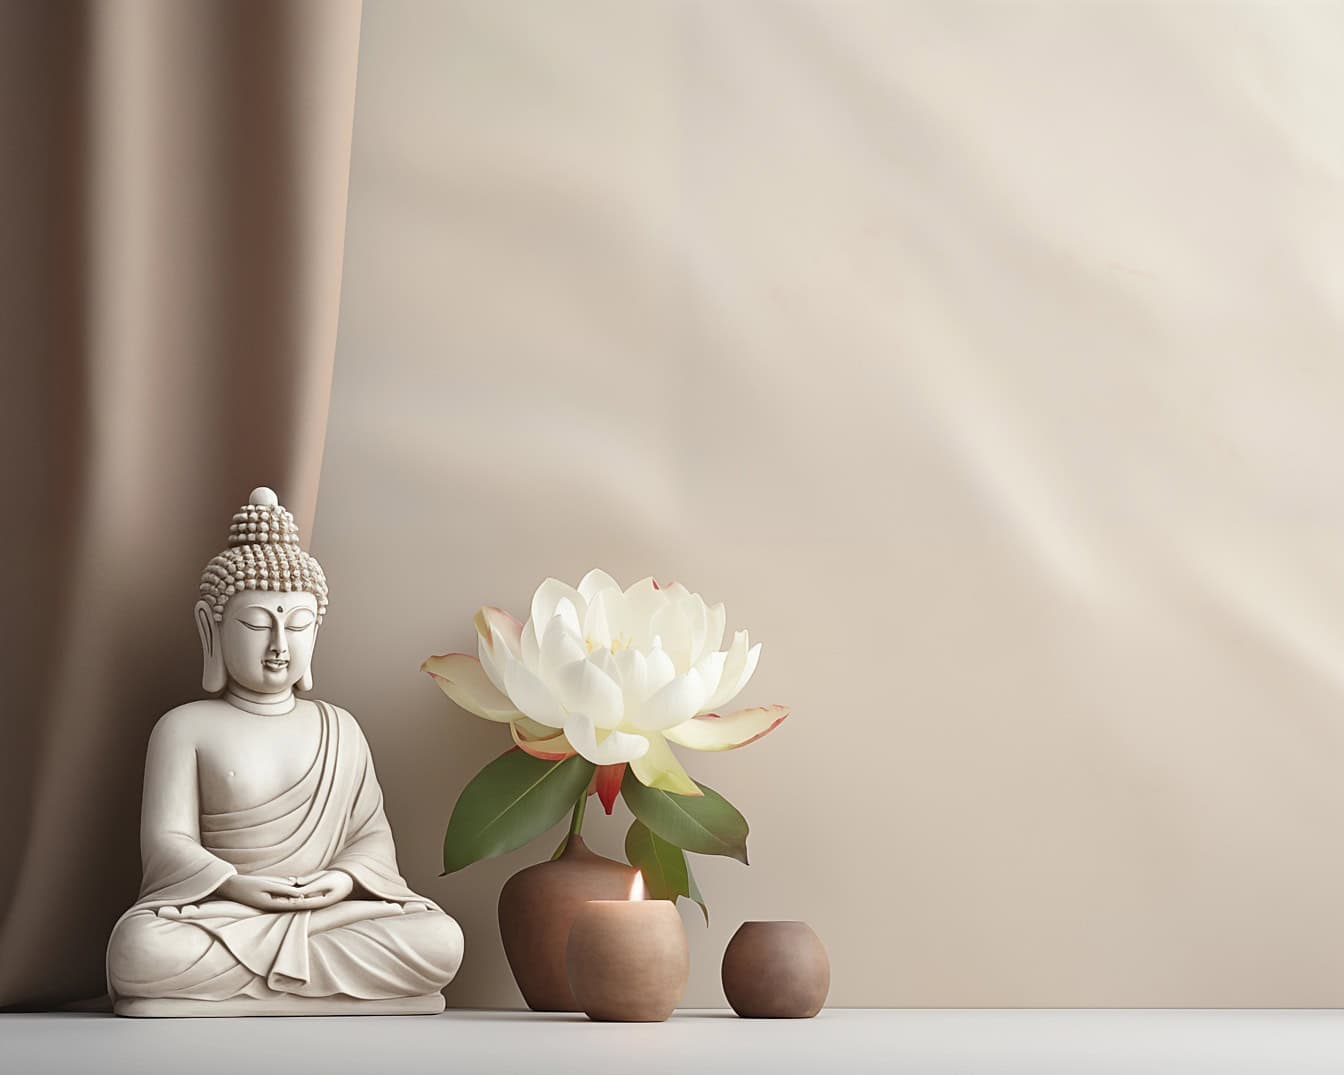 En vit buddhastaty som sitter bredvid en vit lotusblomma, en illustration som visar zenmeditation